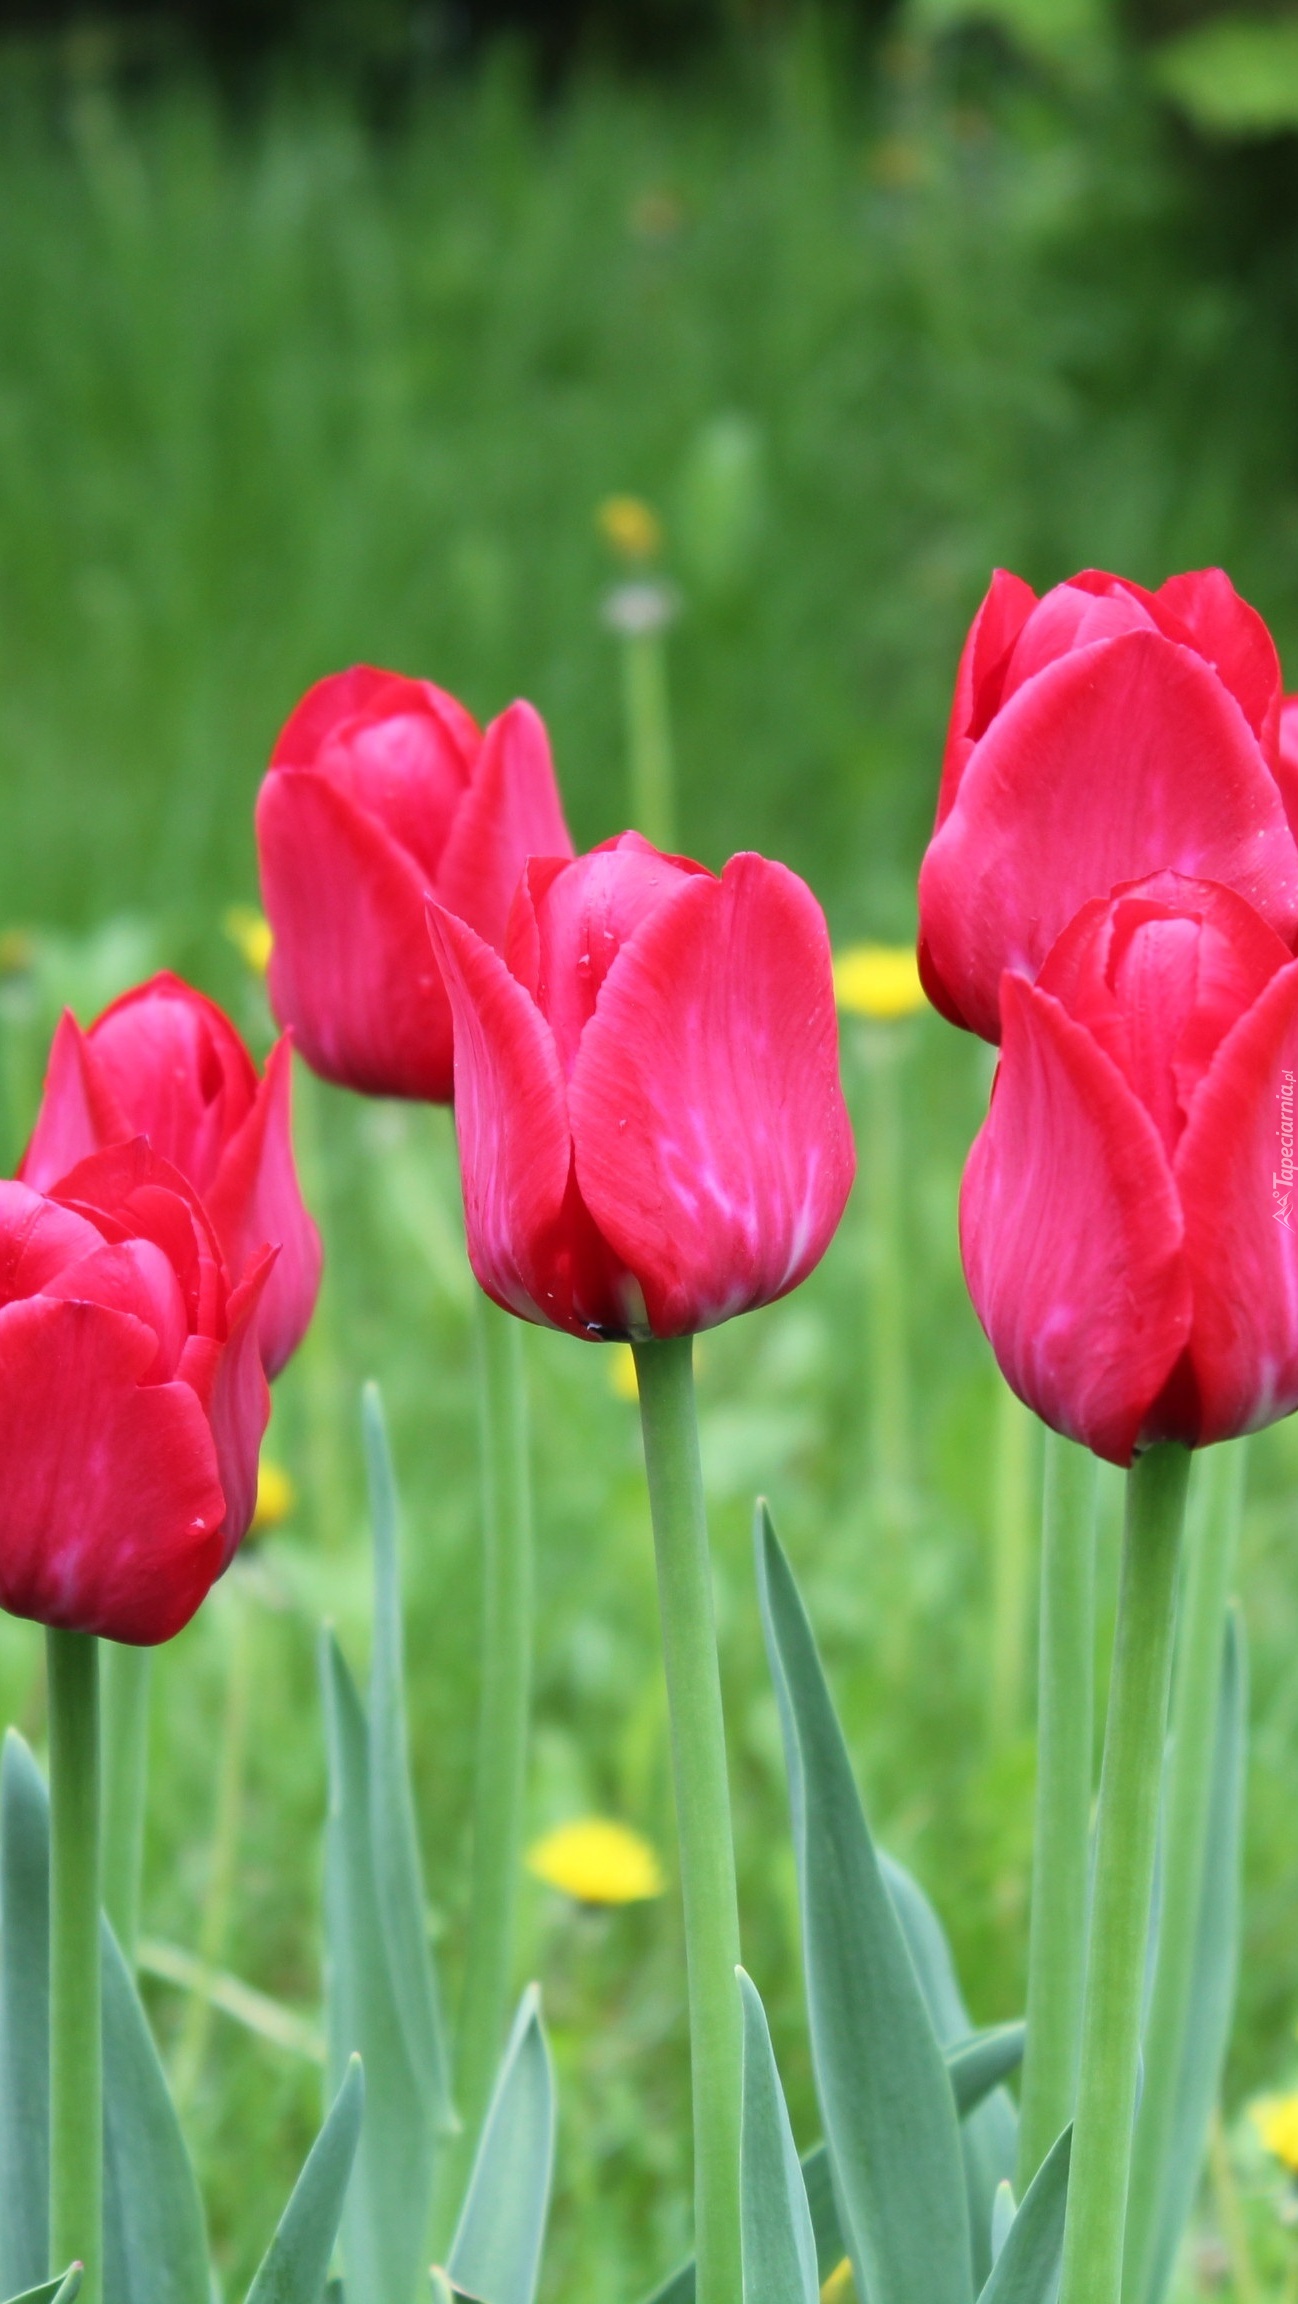 Kępka czerwonych tulipanów